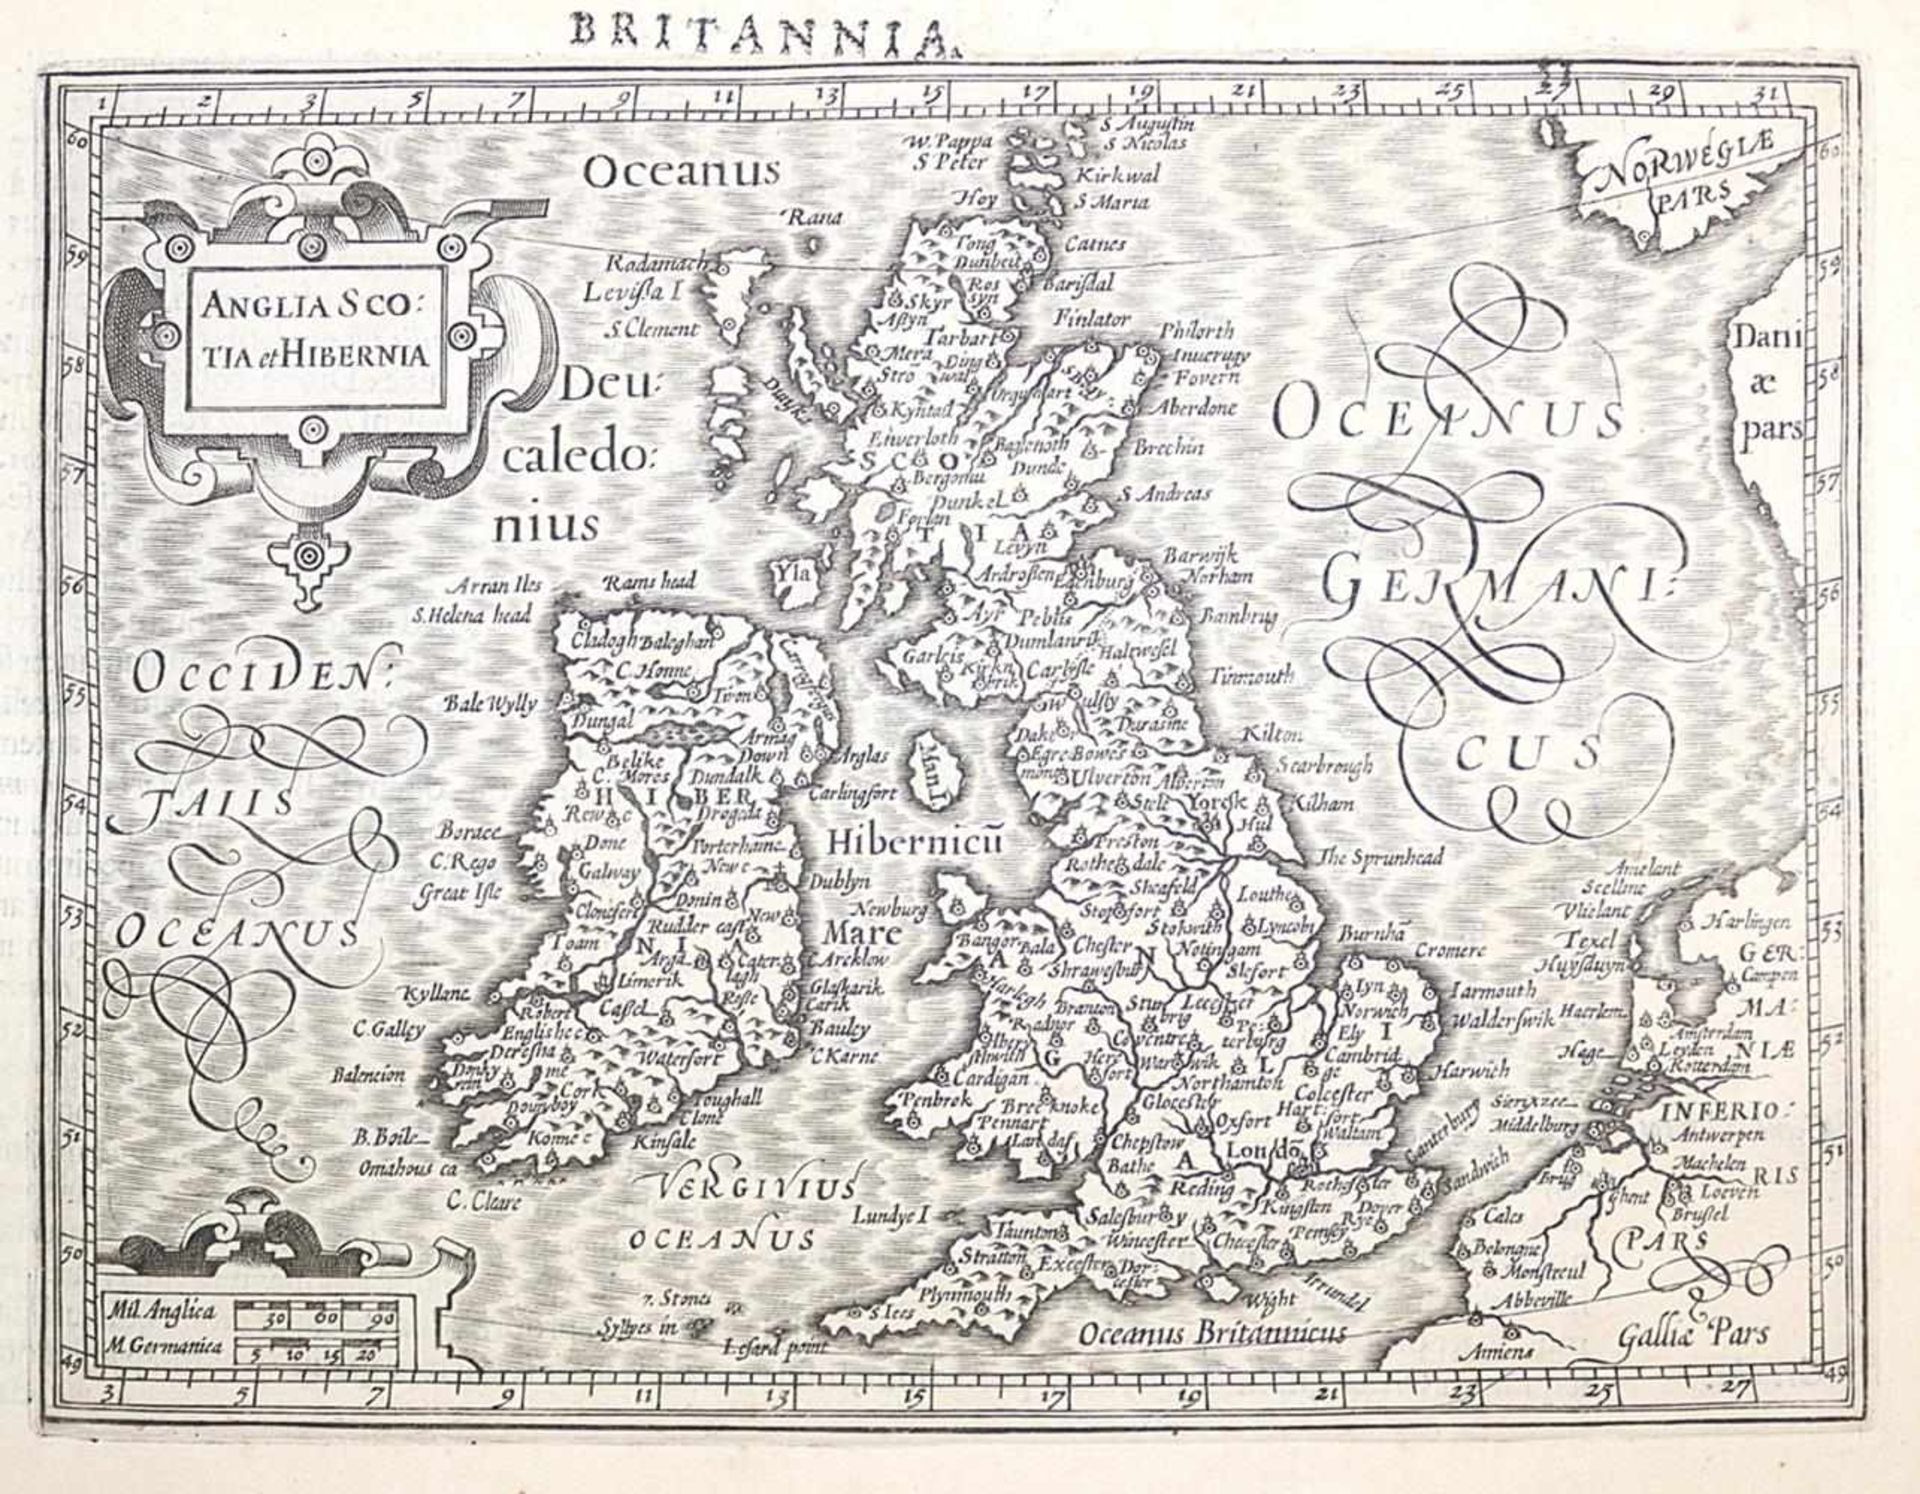 England.England. 9 Kupferstichkarten, 1632. Blattgröße 16,5 x 21 cm. Aus: Atlas siveEngla